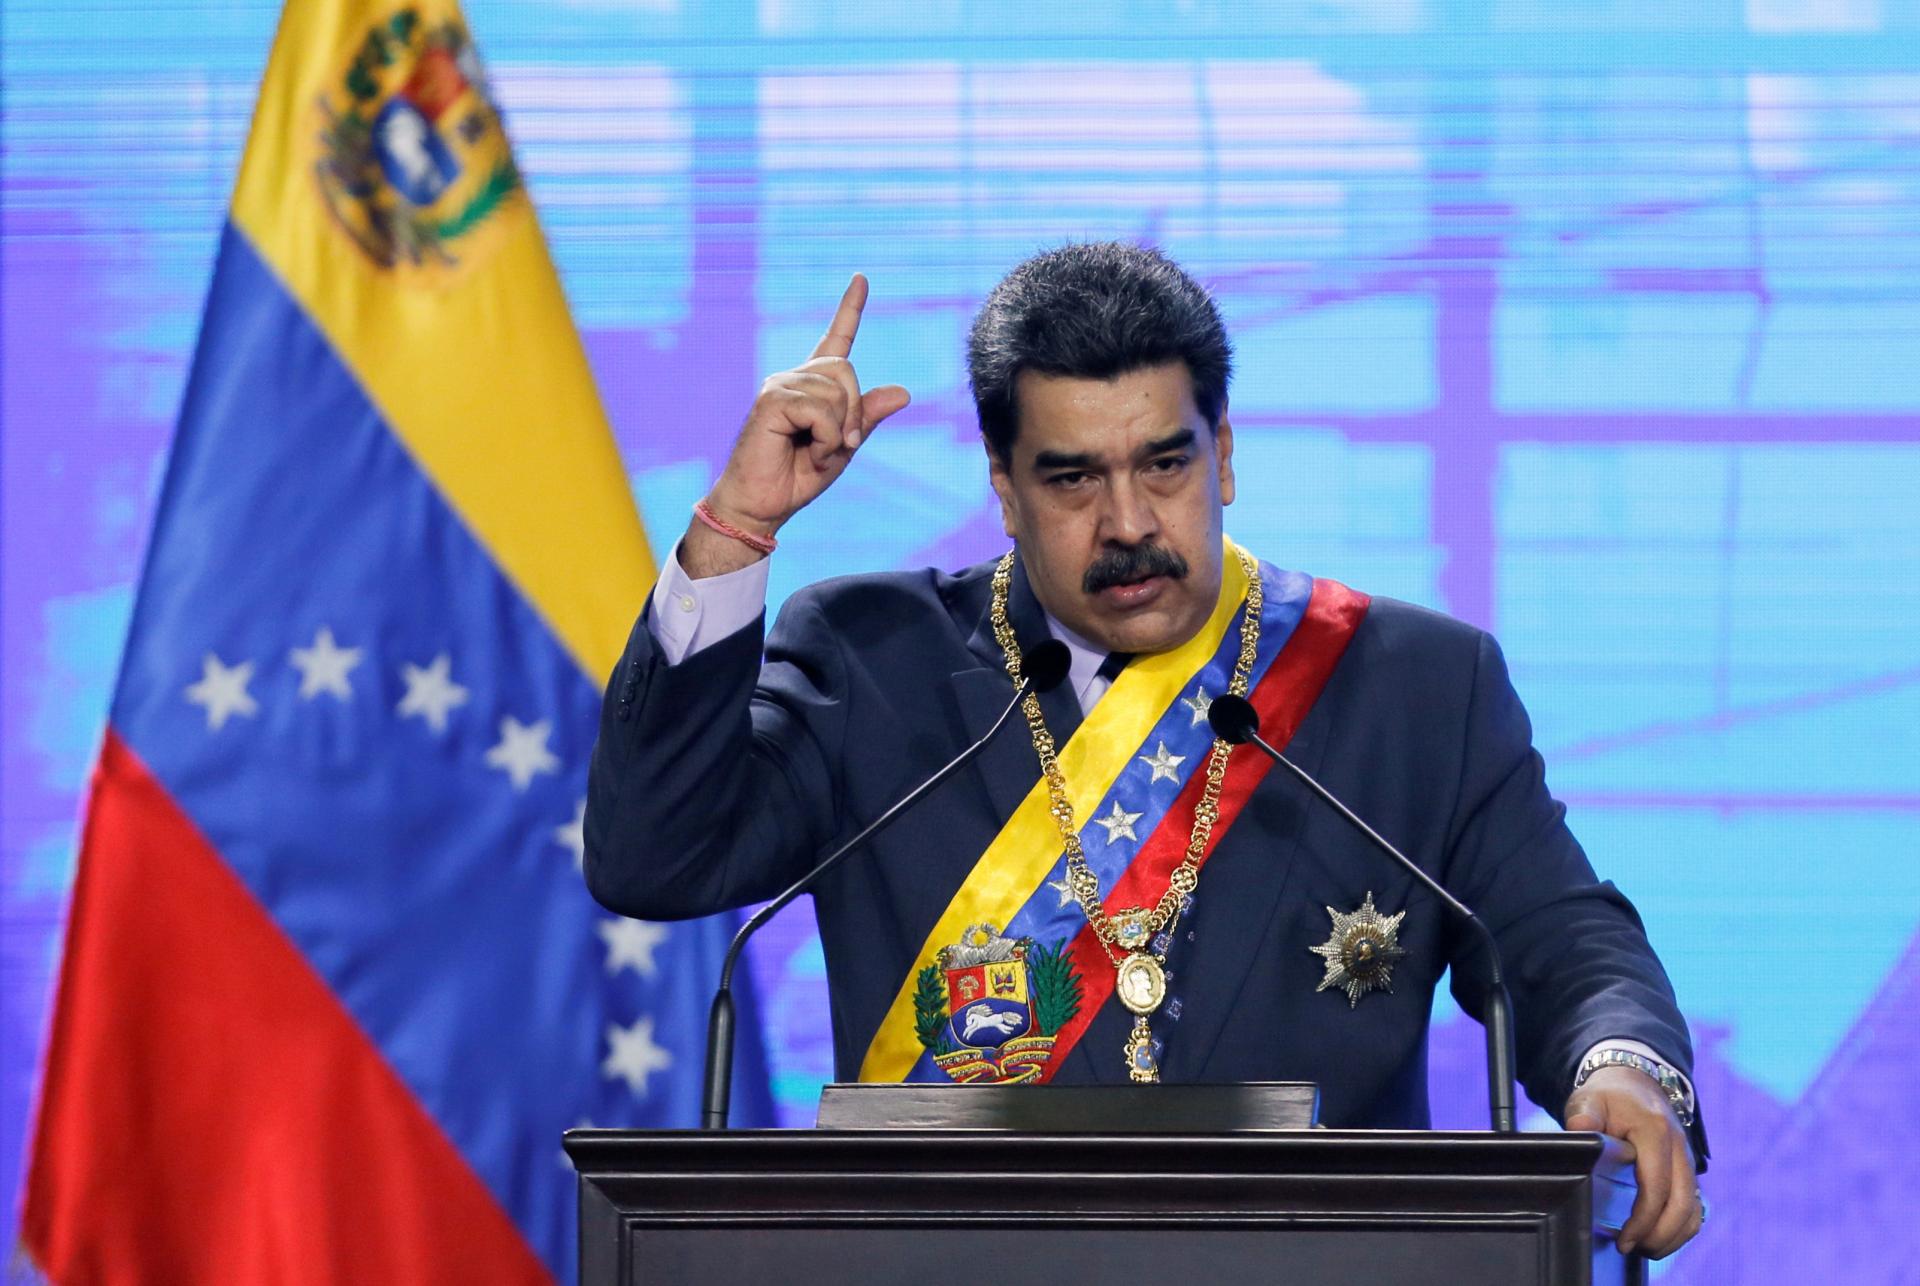 نیکولاس مادورو: تحریمات مبارزه دولت با کرونا را محدود کرده است